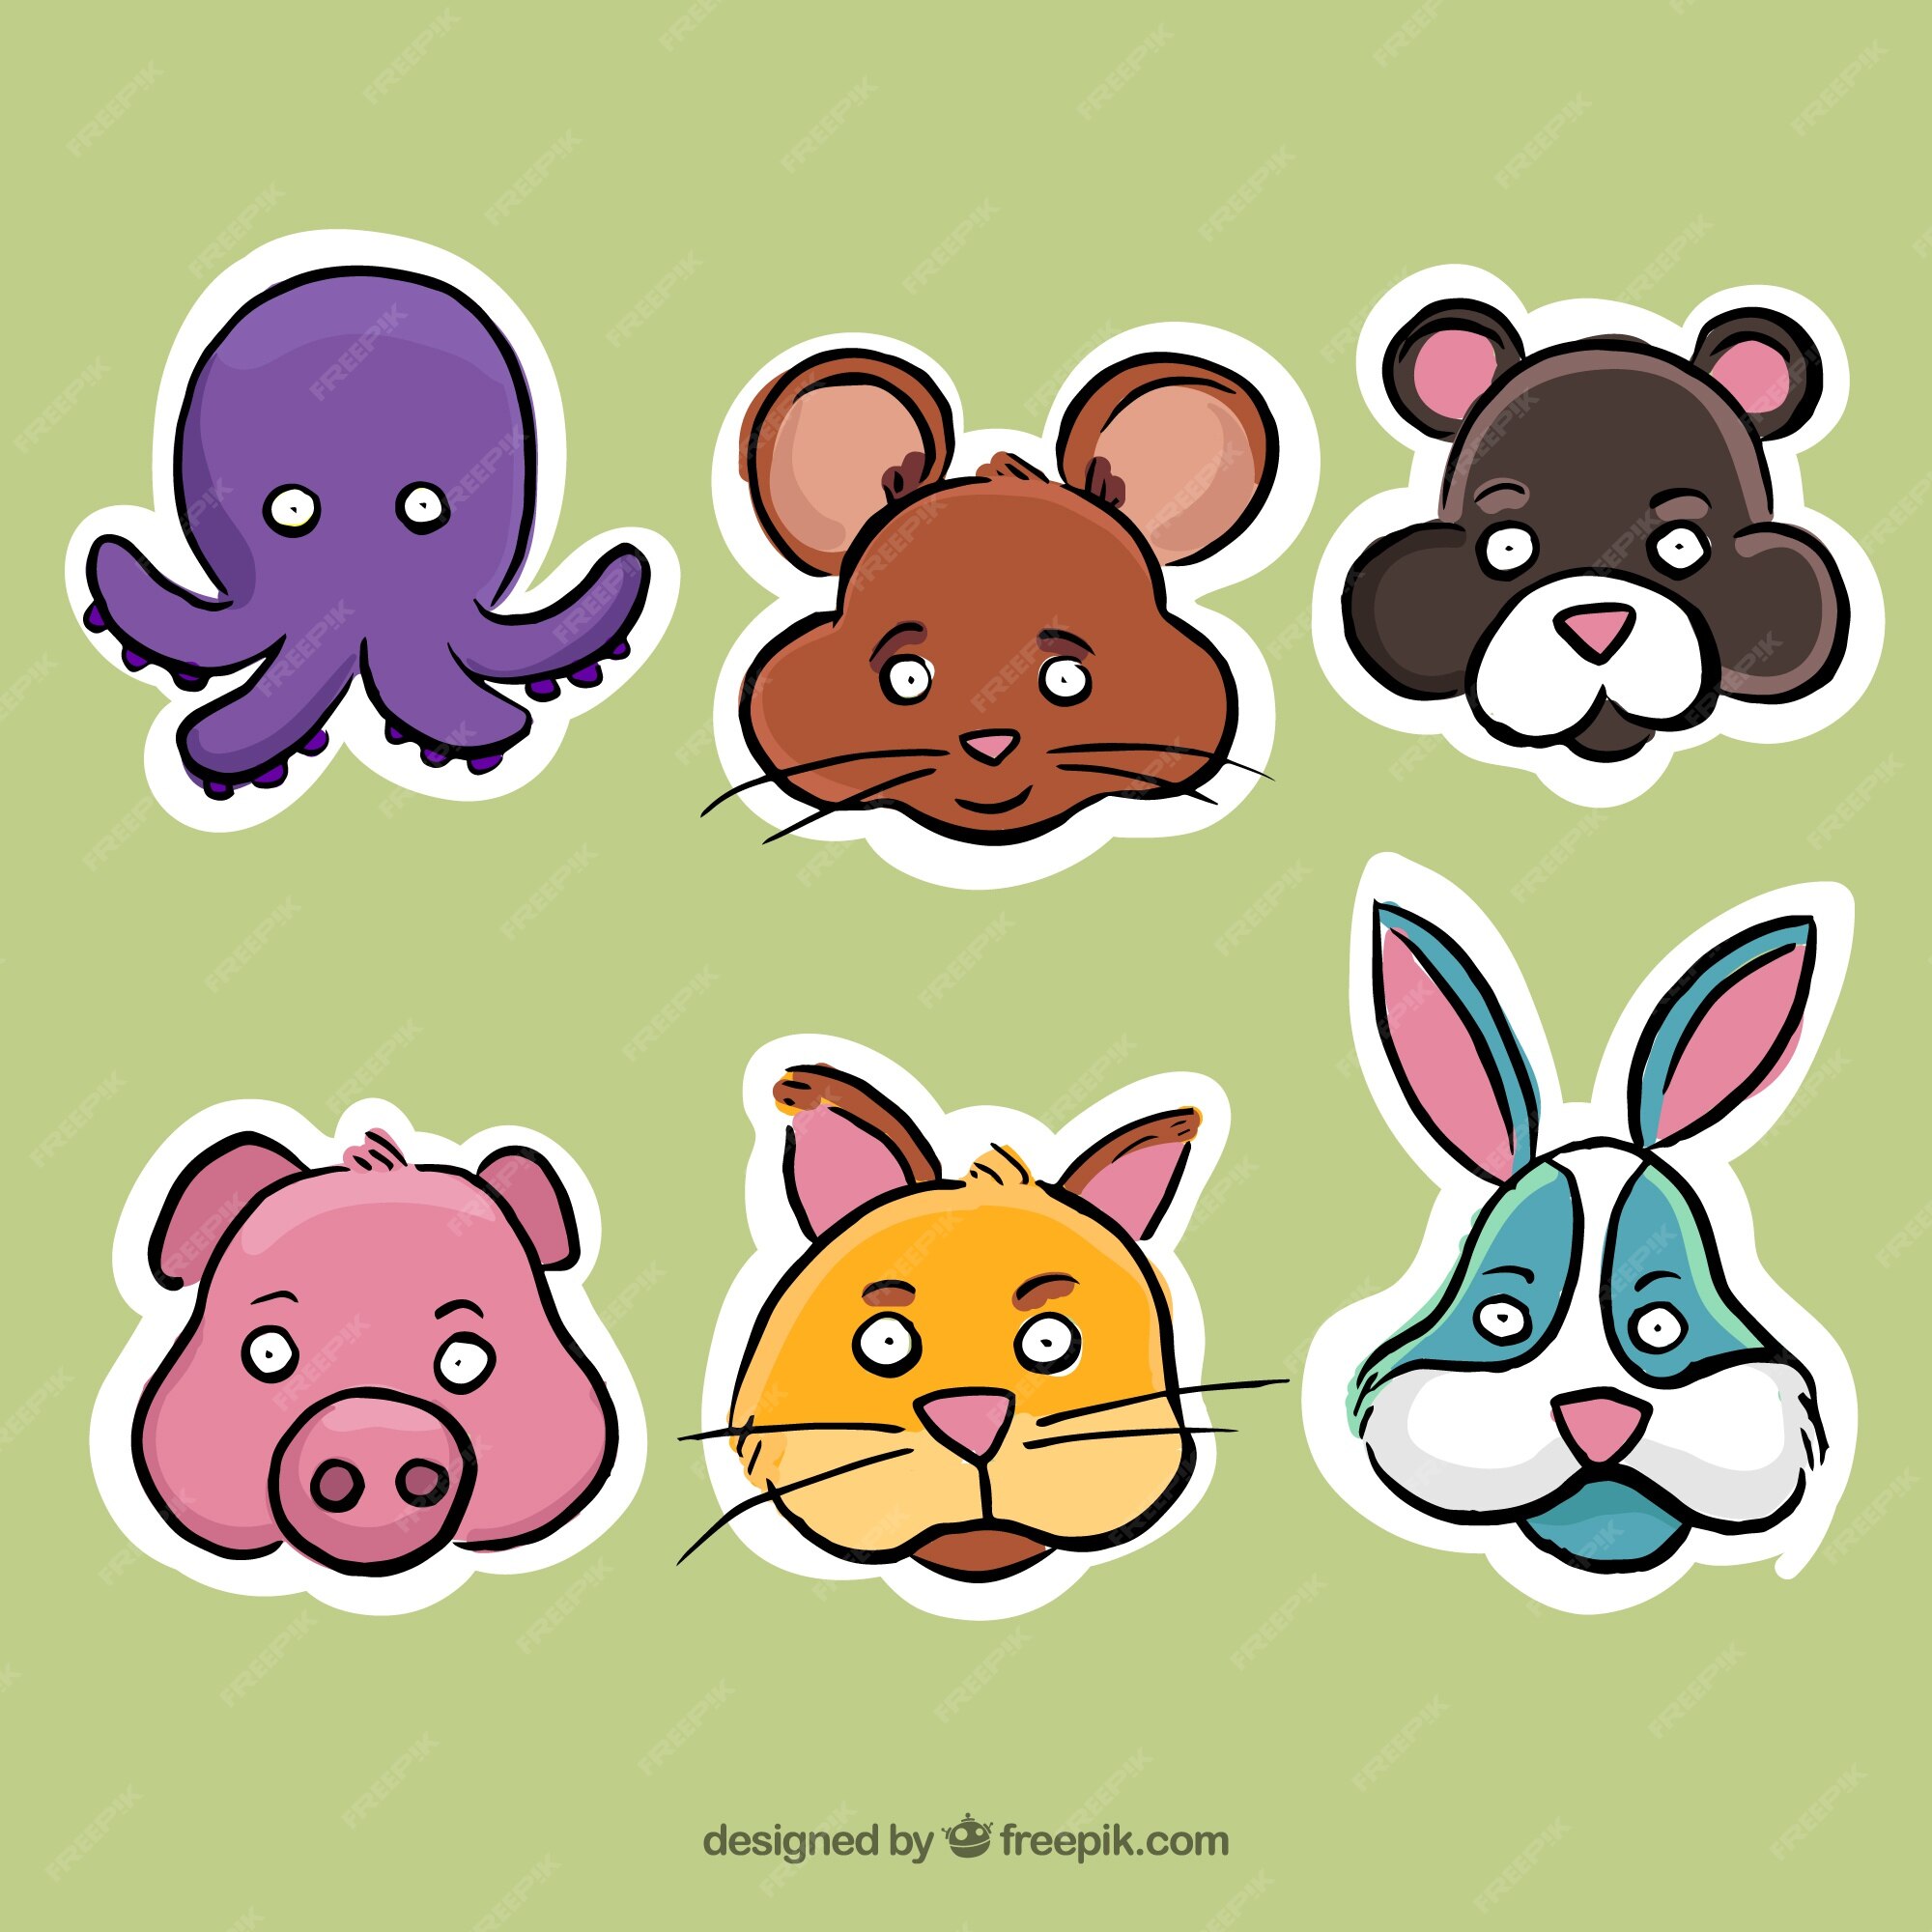 Animal Sticker Images - Free Download on Freepik